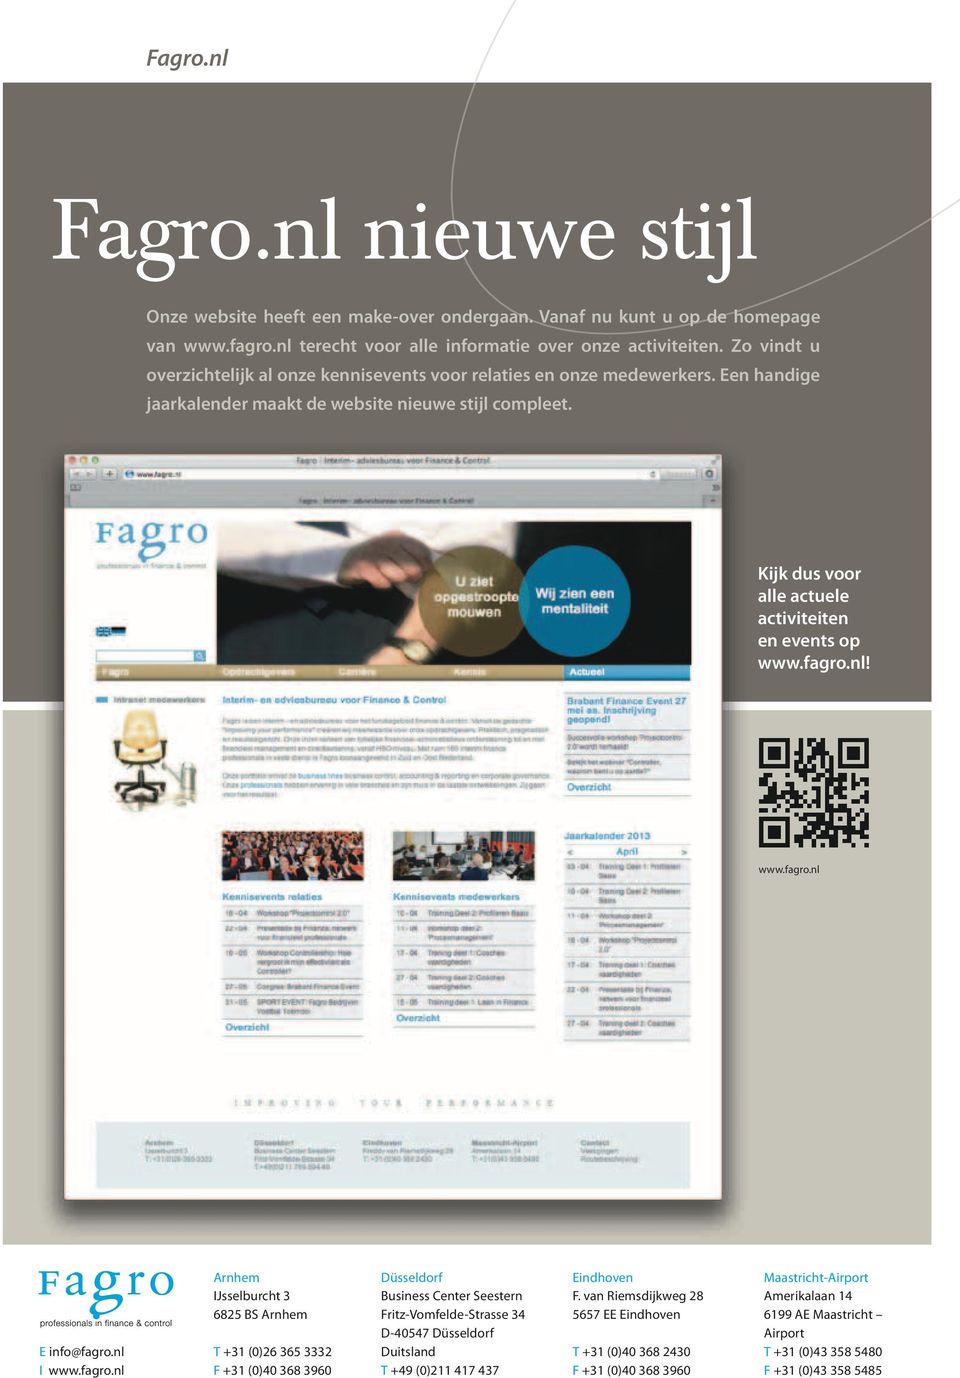 Kijk dus voor alle actuele activiteiten en events op www.fagro.